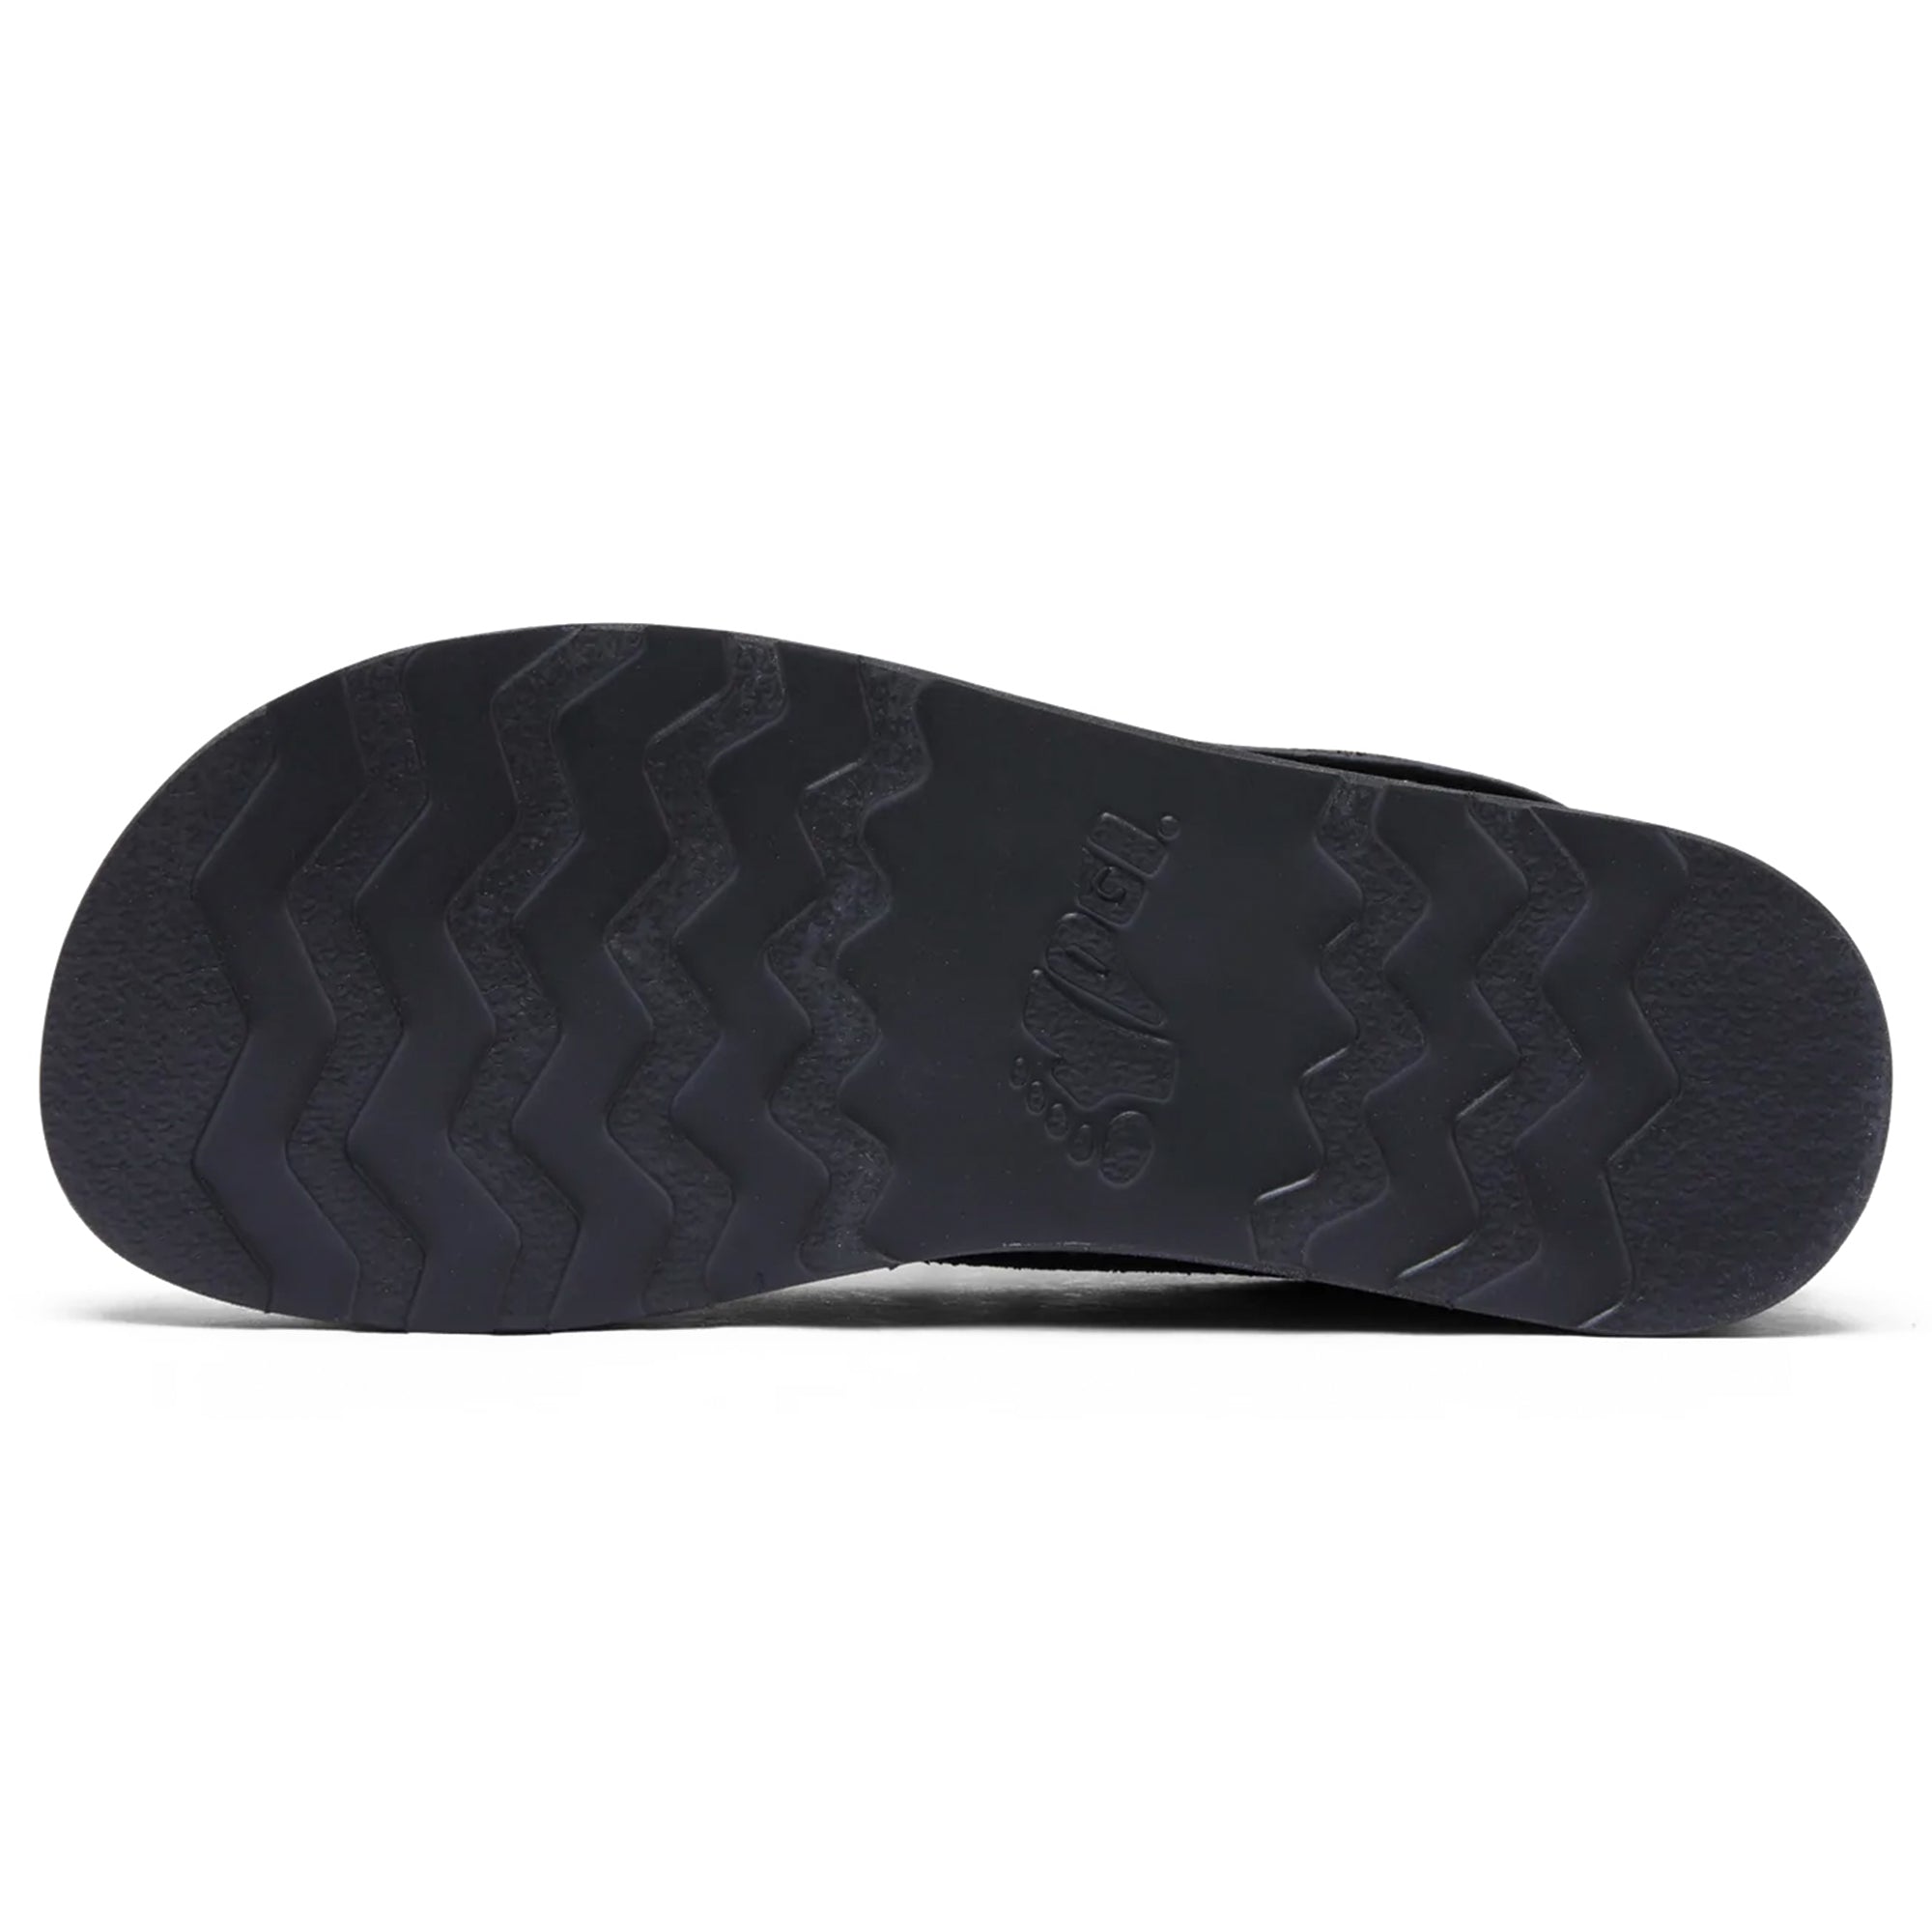 Yogi Finn 3 Tumbled & Reverse Leather EVA Sole Shoe - Black/Khaki